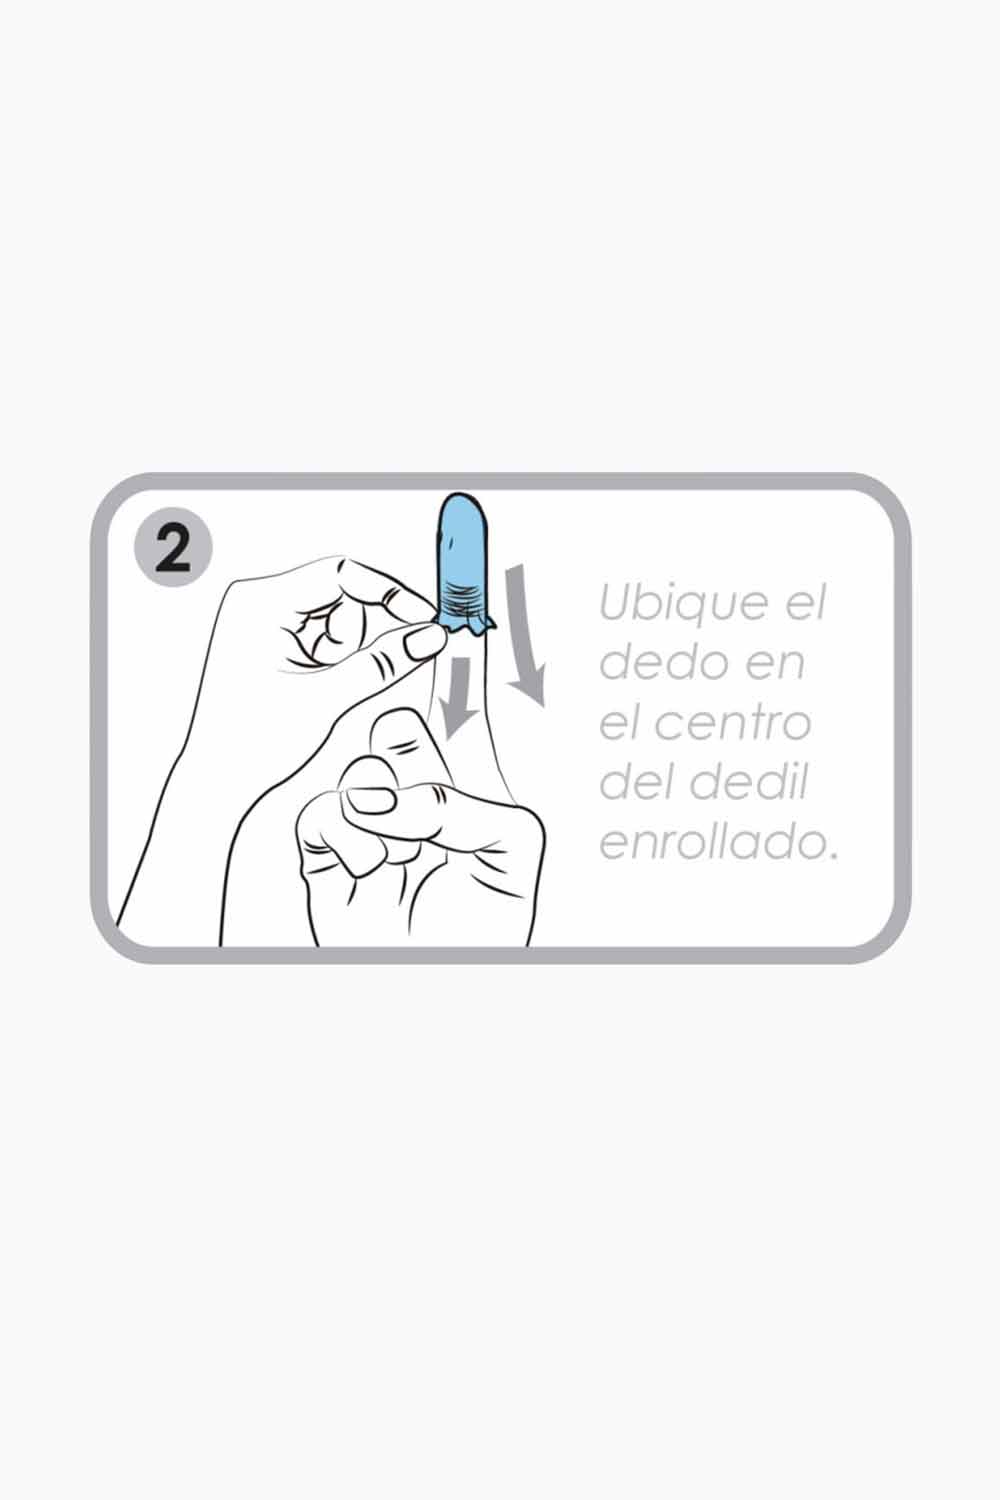 DEDILES | Condones para Dedos Uniq x50